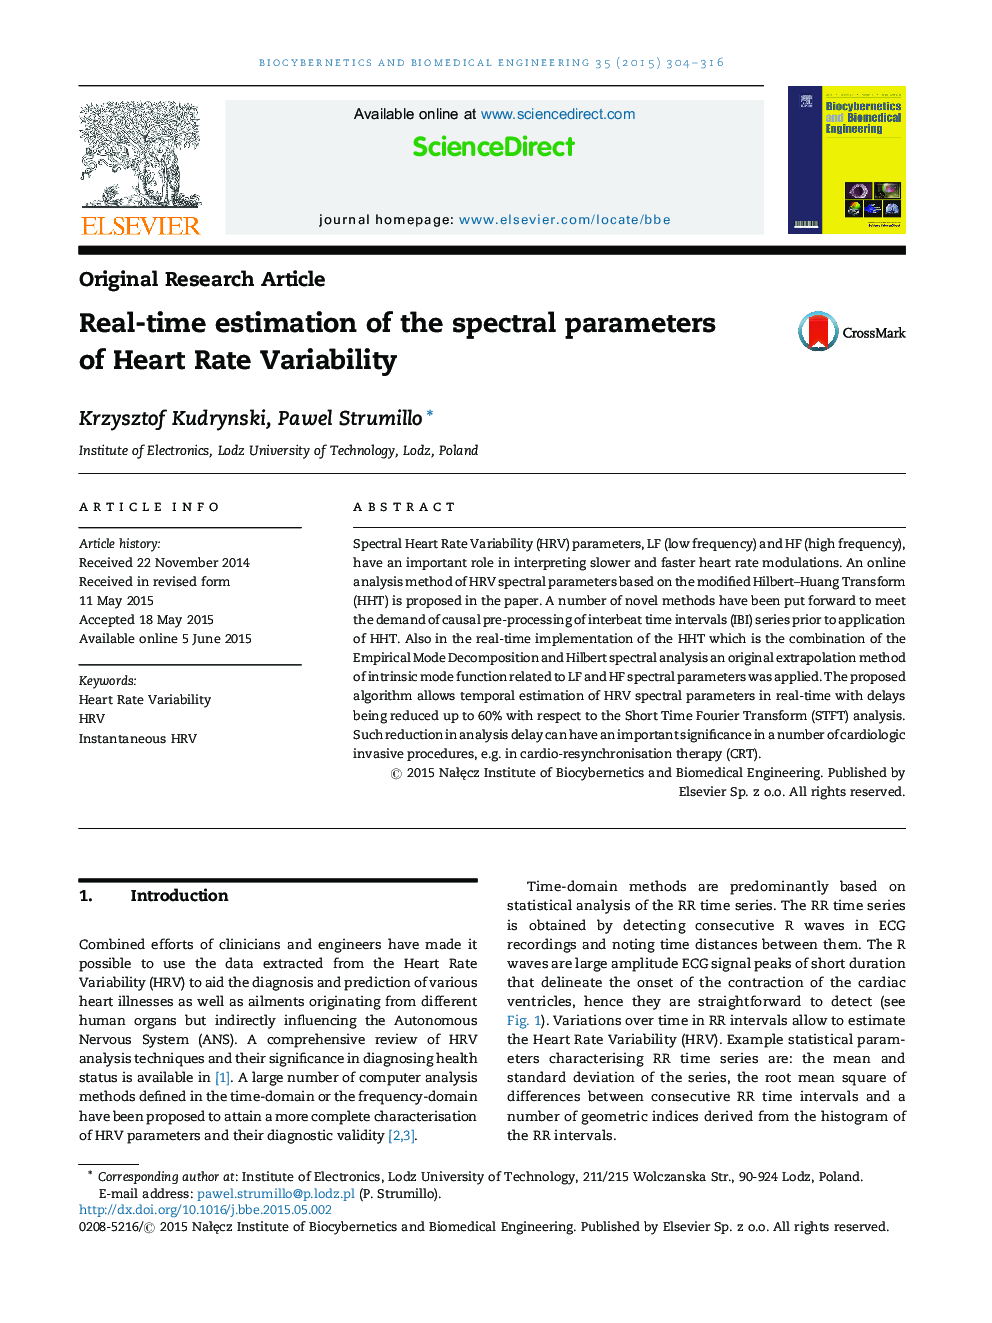 برآورد زمان واقعی پارامترهای طیفی متغیر ضربان قلب 